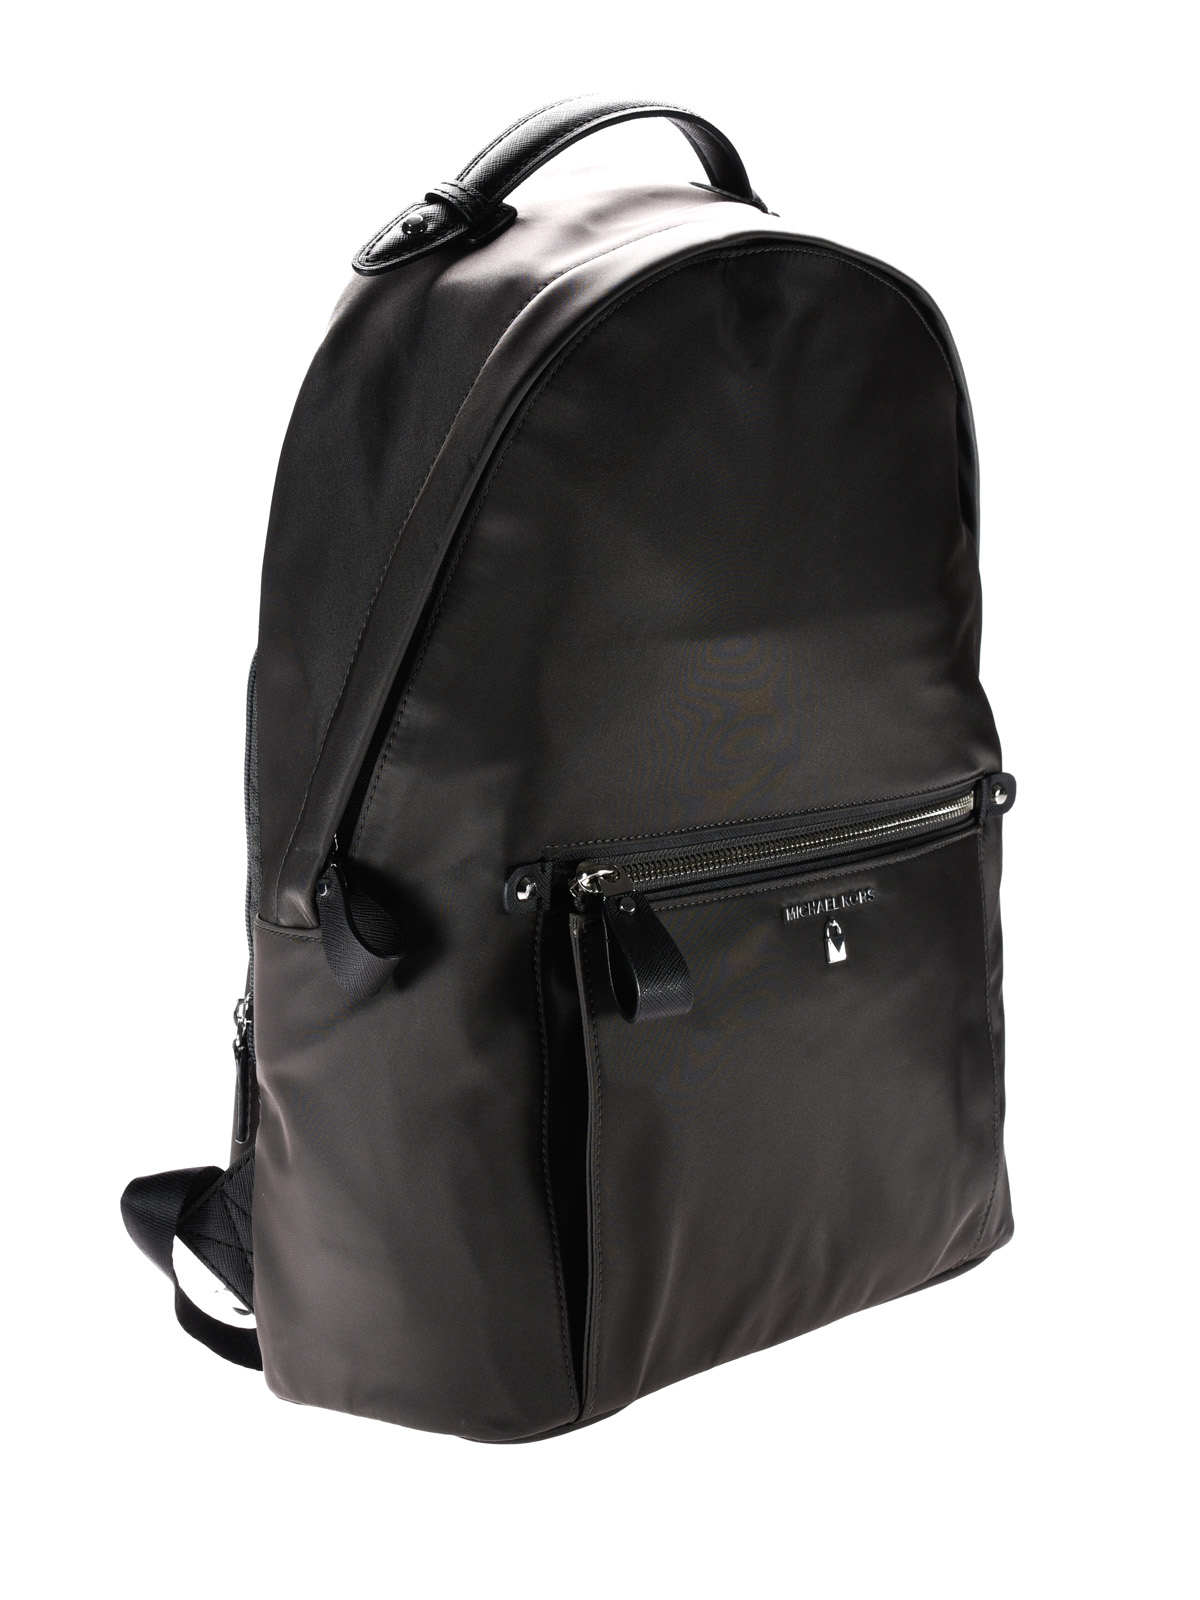 michael kors backpack nylon